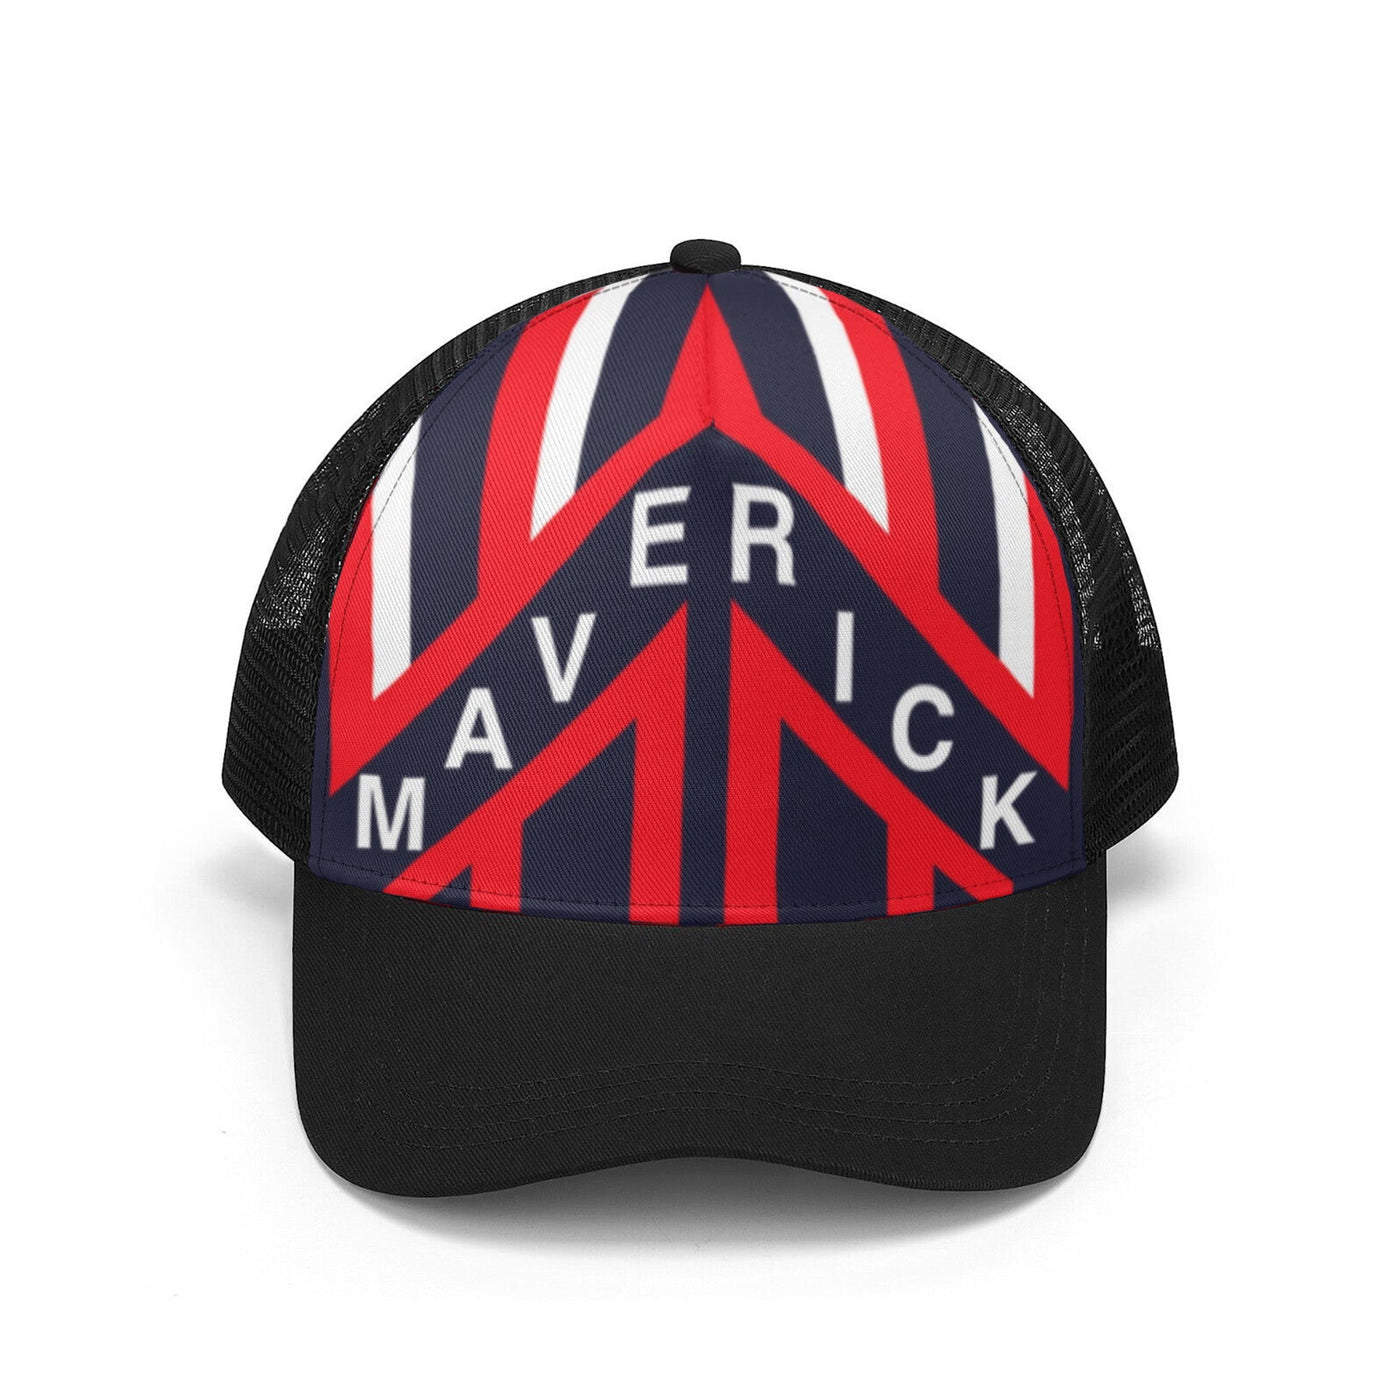 Maverick Trucker Hat with Top Gun Helmet Graphic